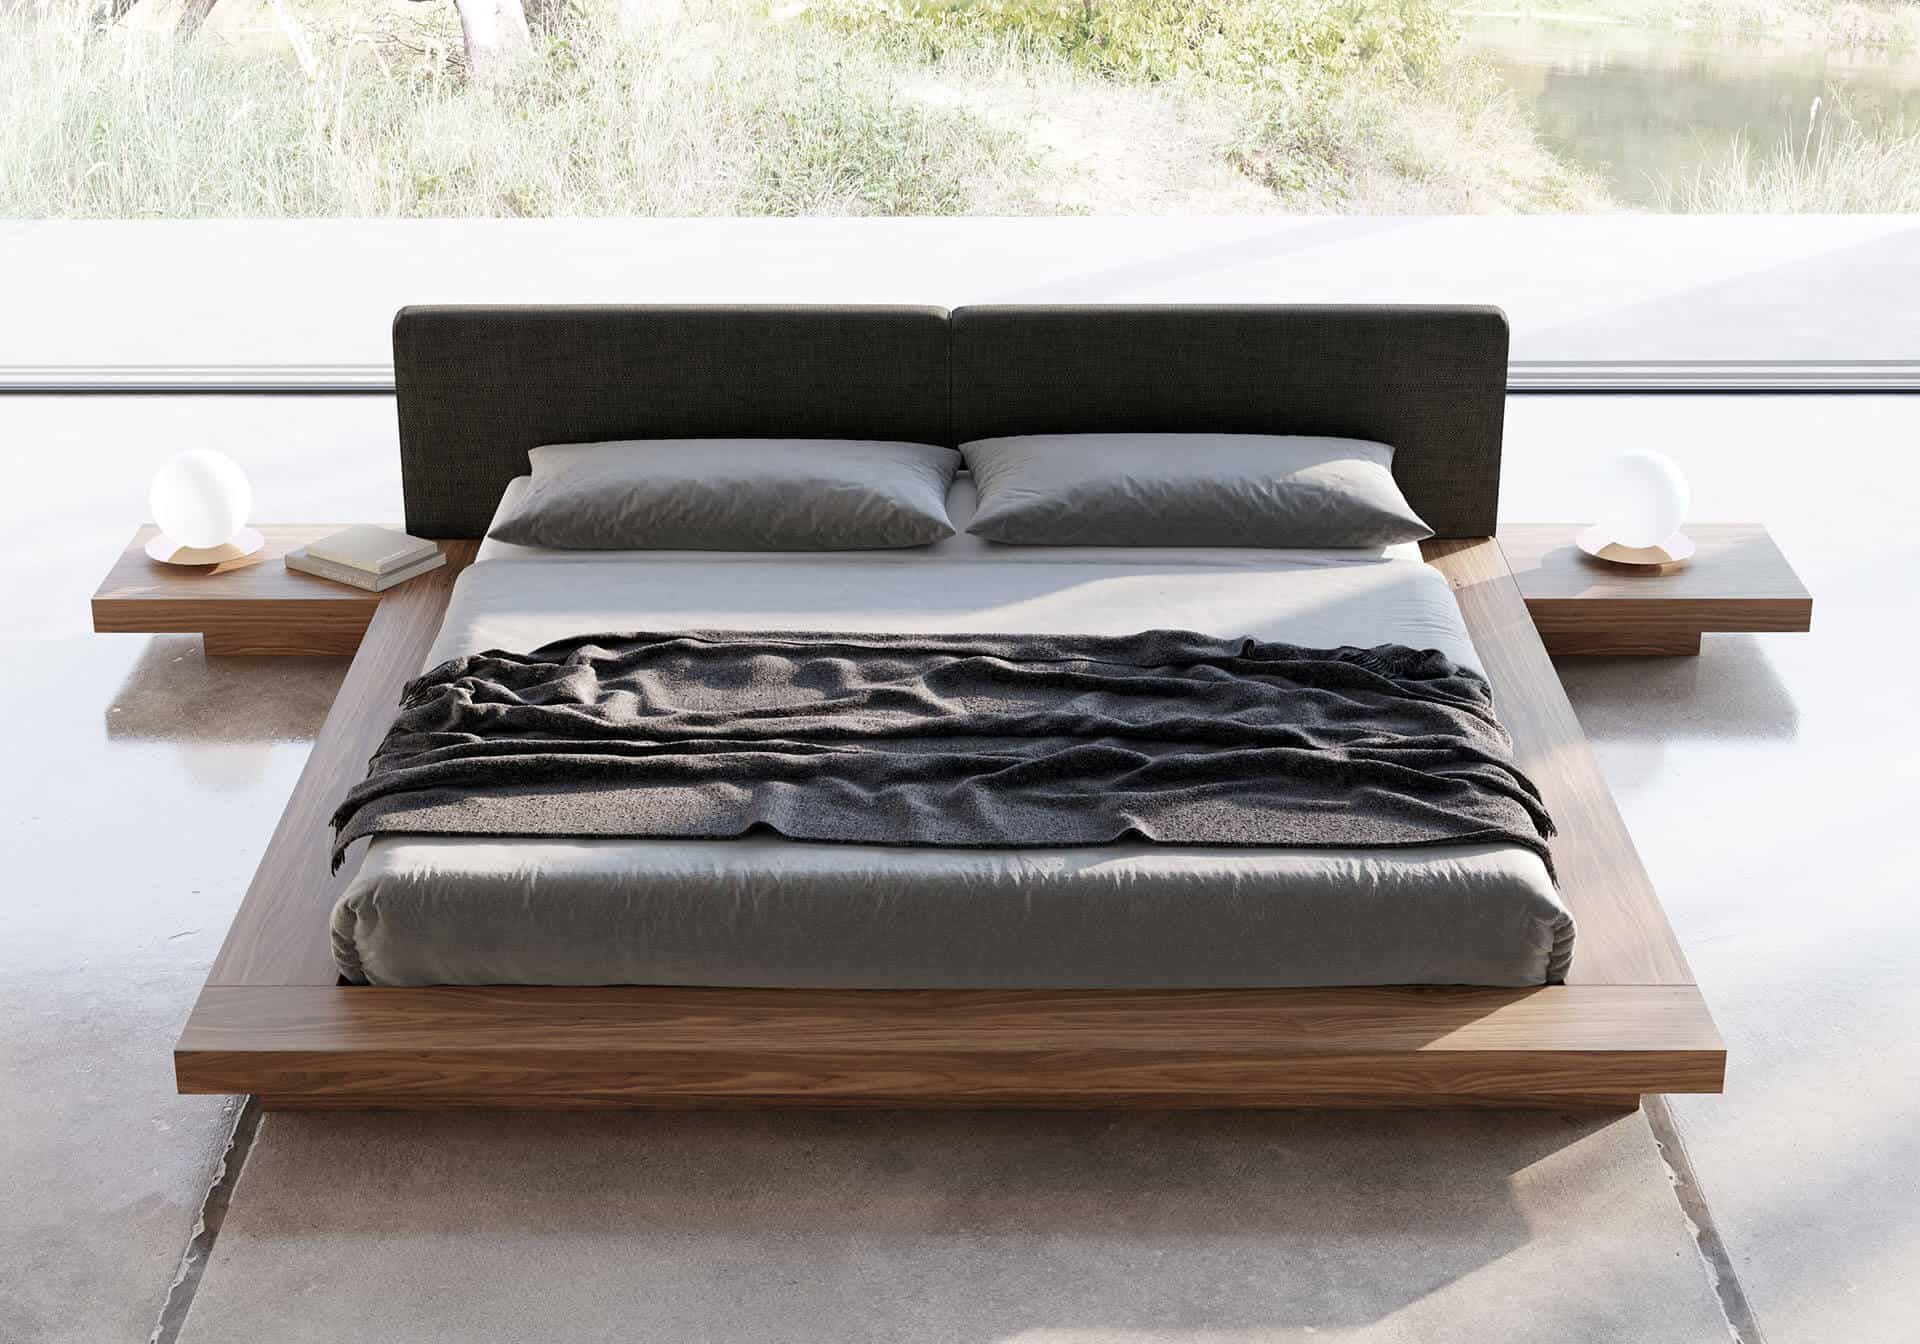 Thiết kế giường phản giúp tiết kiệm diện tích